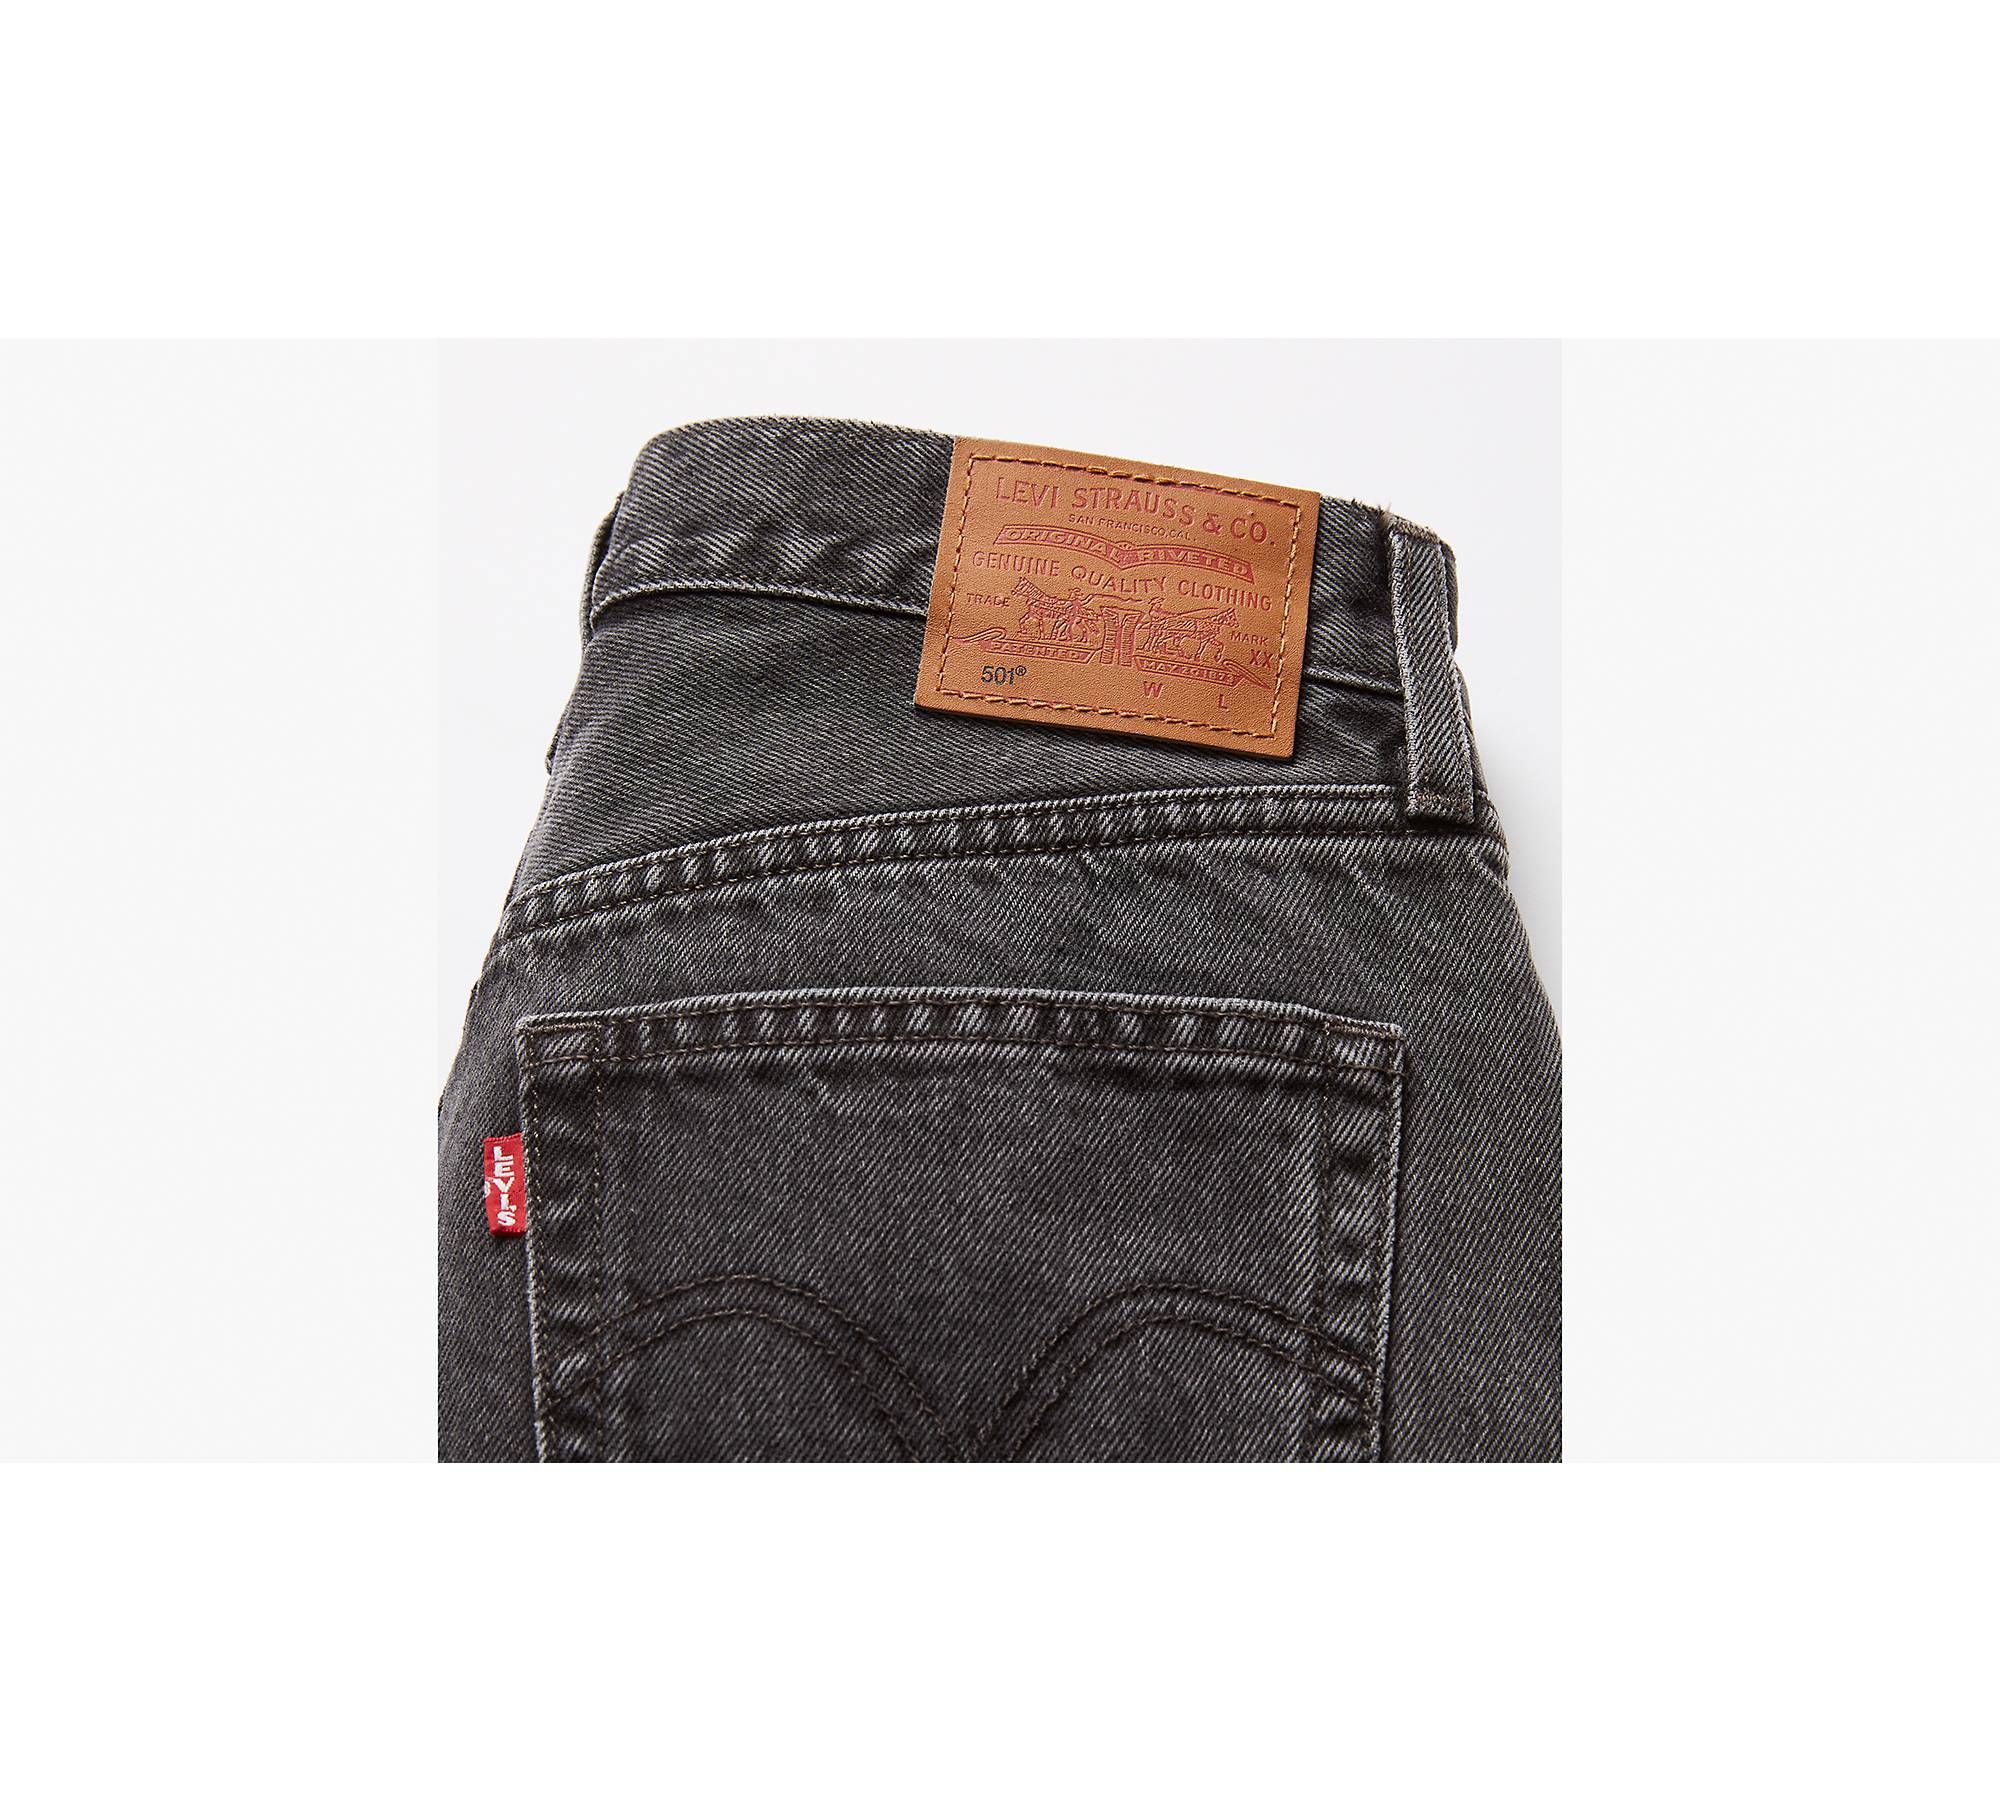 501® Original Fit Women's Jeans - Black | Levi's® US